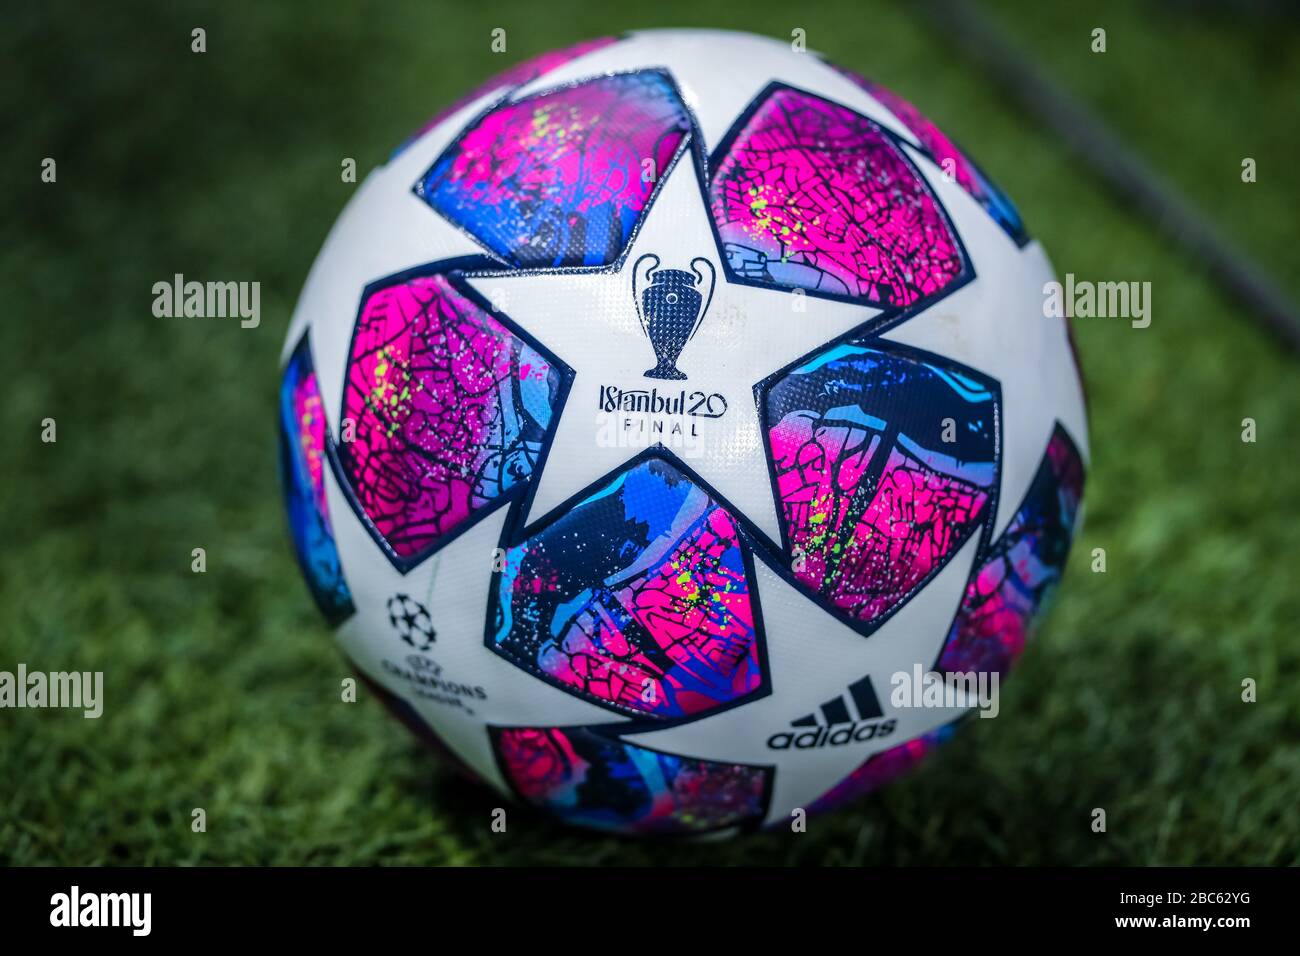 Ballon officiel de l'UEFA Champion League Istambul 2020 final pendant la  saison de football 2019/20 images symboliques - crédit photo Fabrizio  Carabelli /LM Photo Stock - Alamy